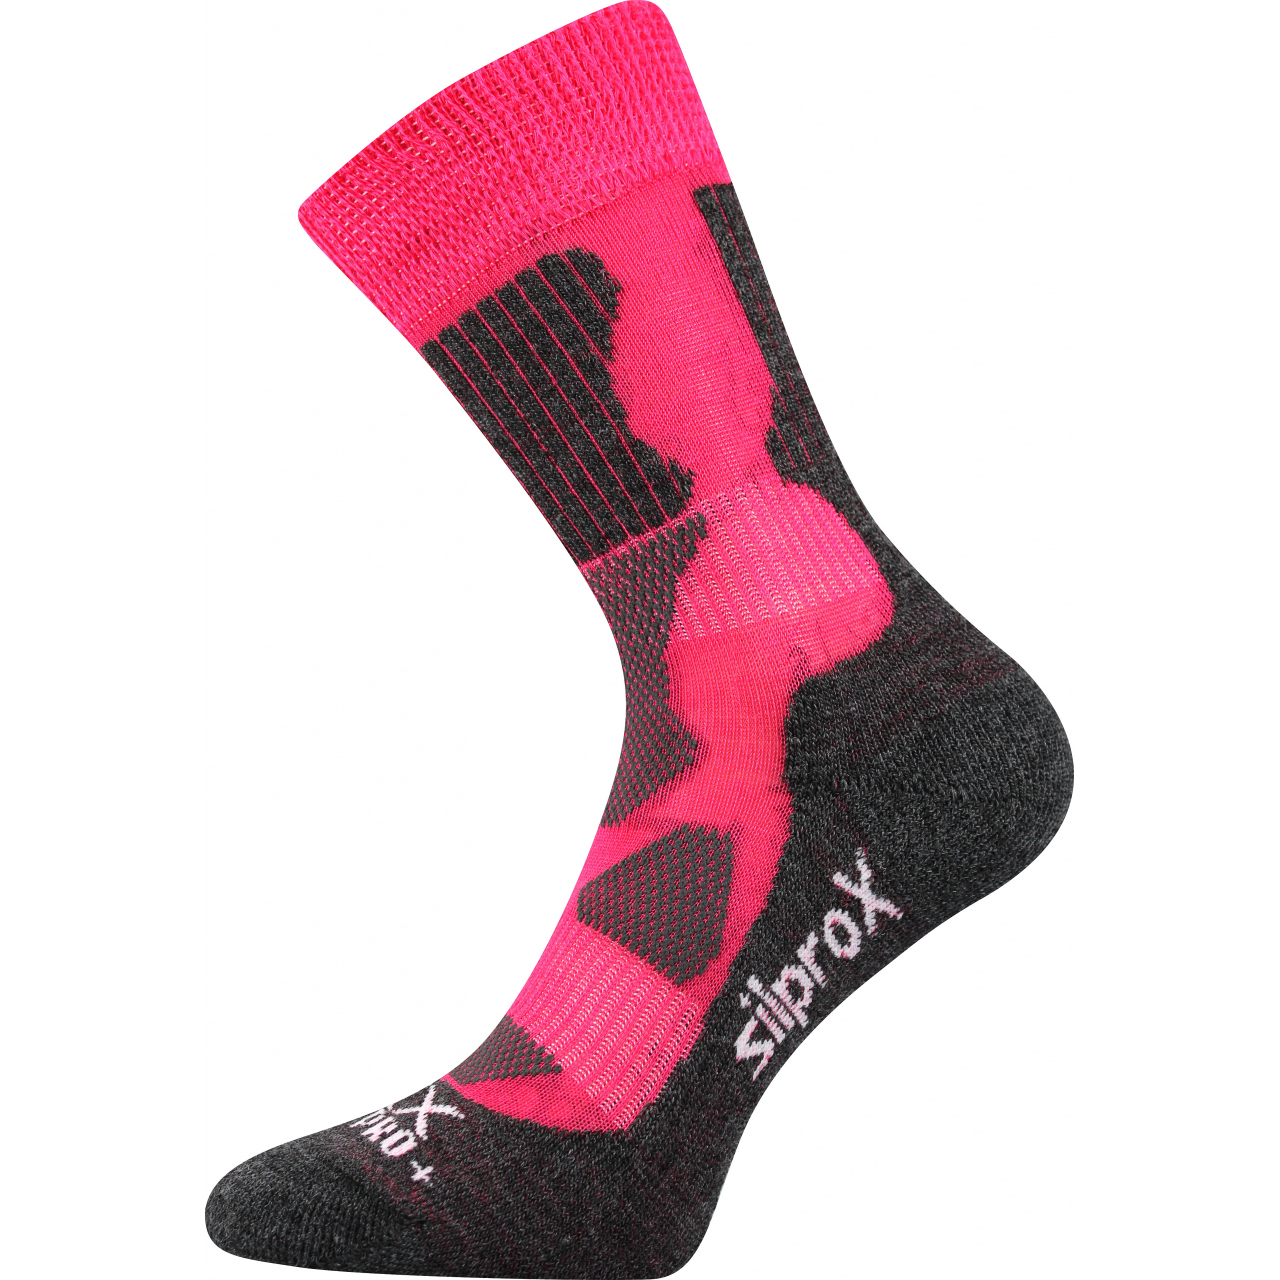 Ponožky sportovní Voxx Etrex - růžové-šedé, 35-38